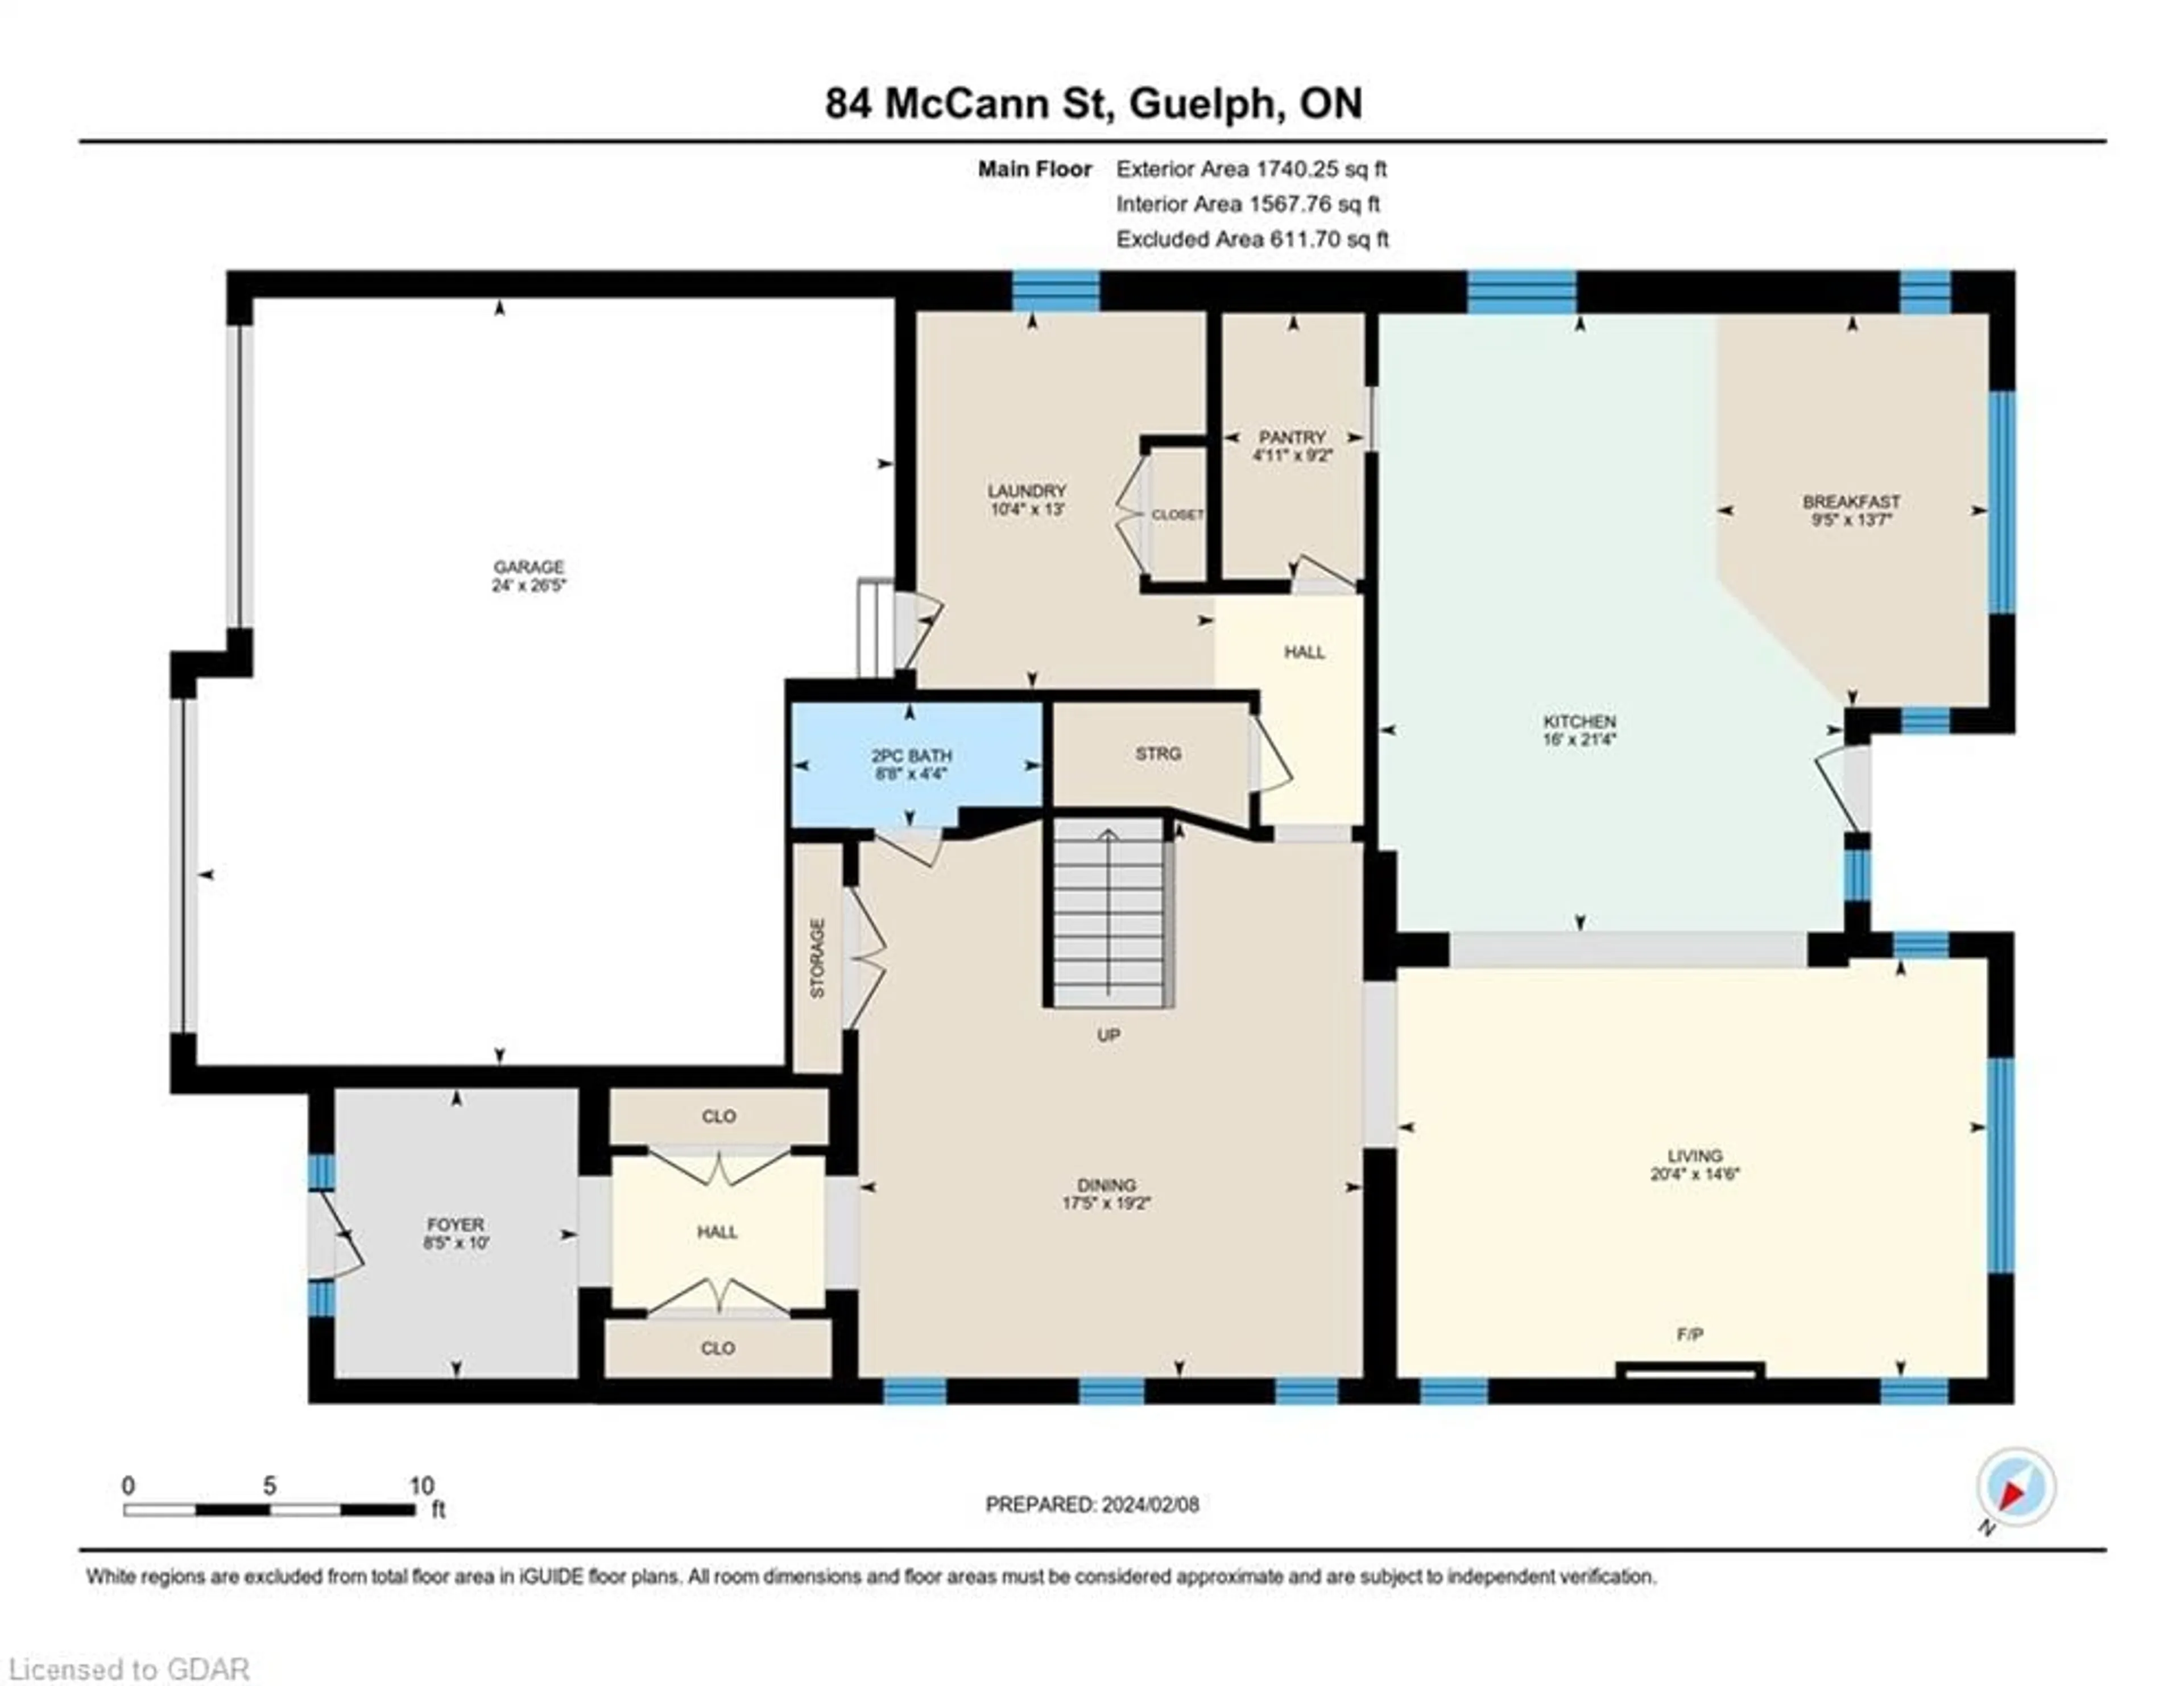 Floor plan for 84 Mccann St, Guelph Ontario N1G 0B9